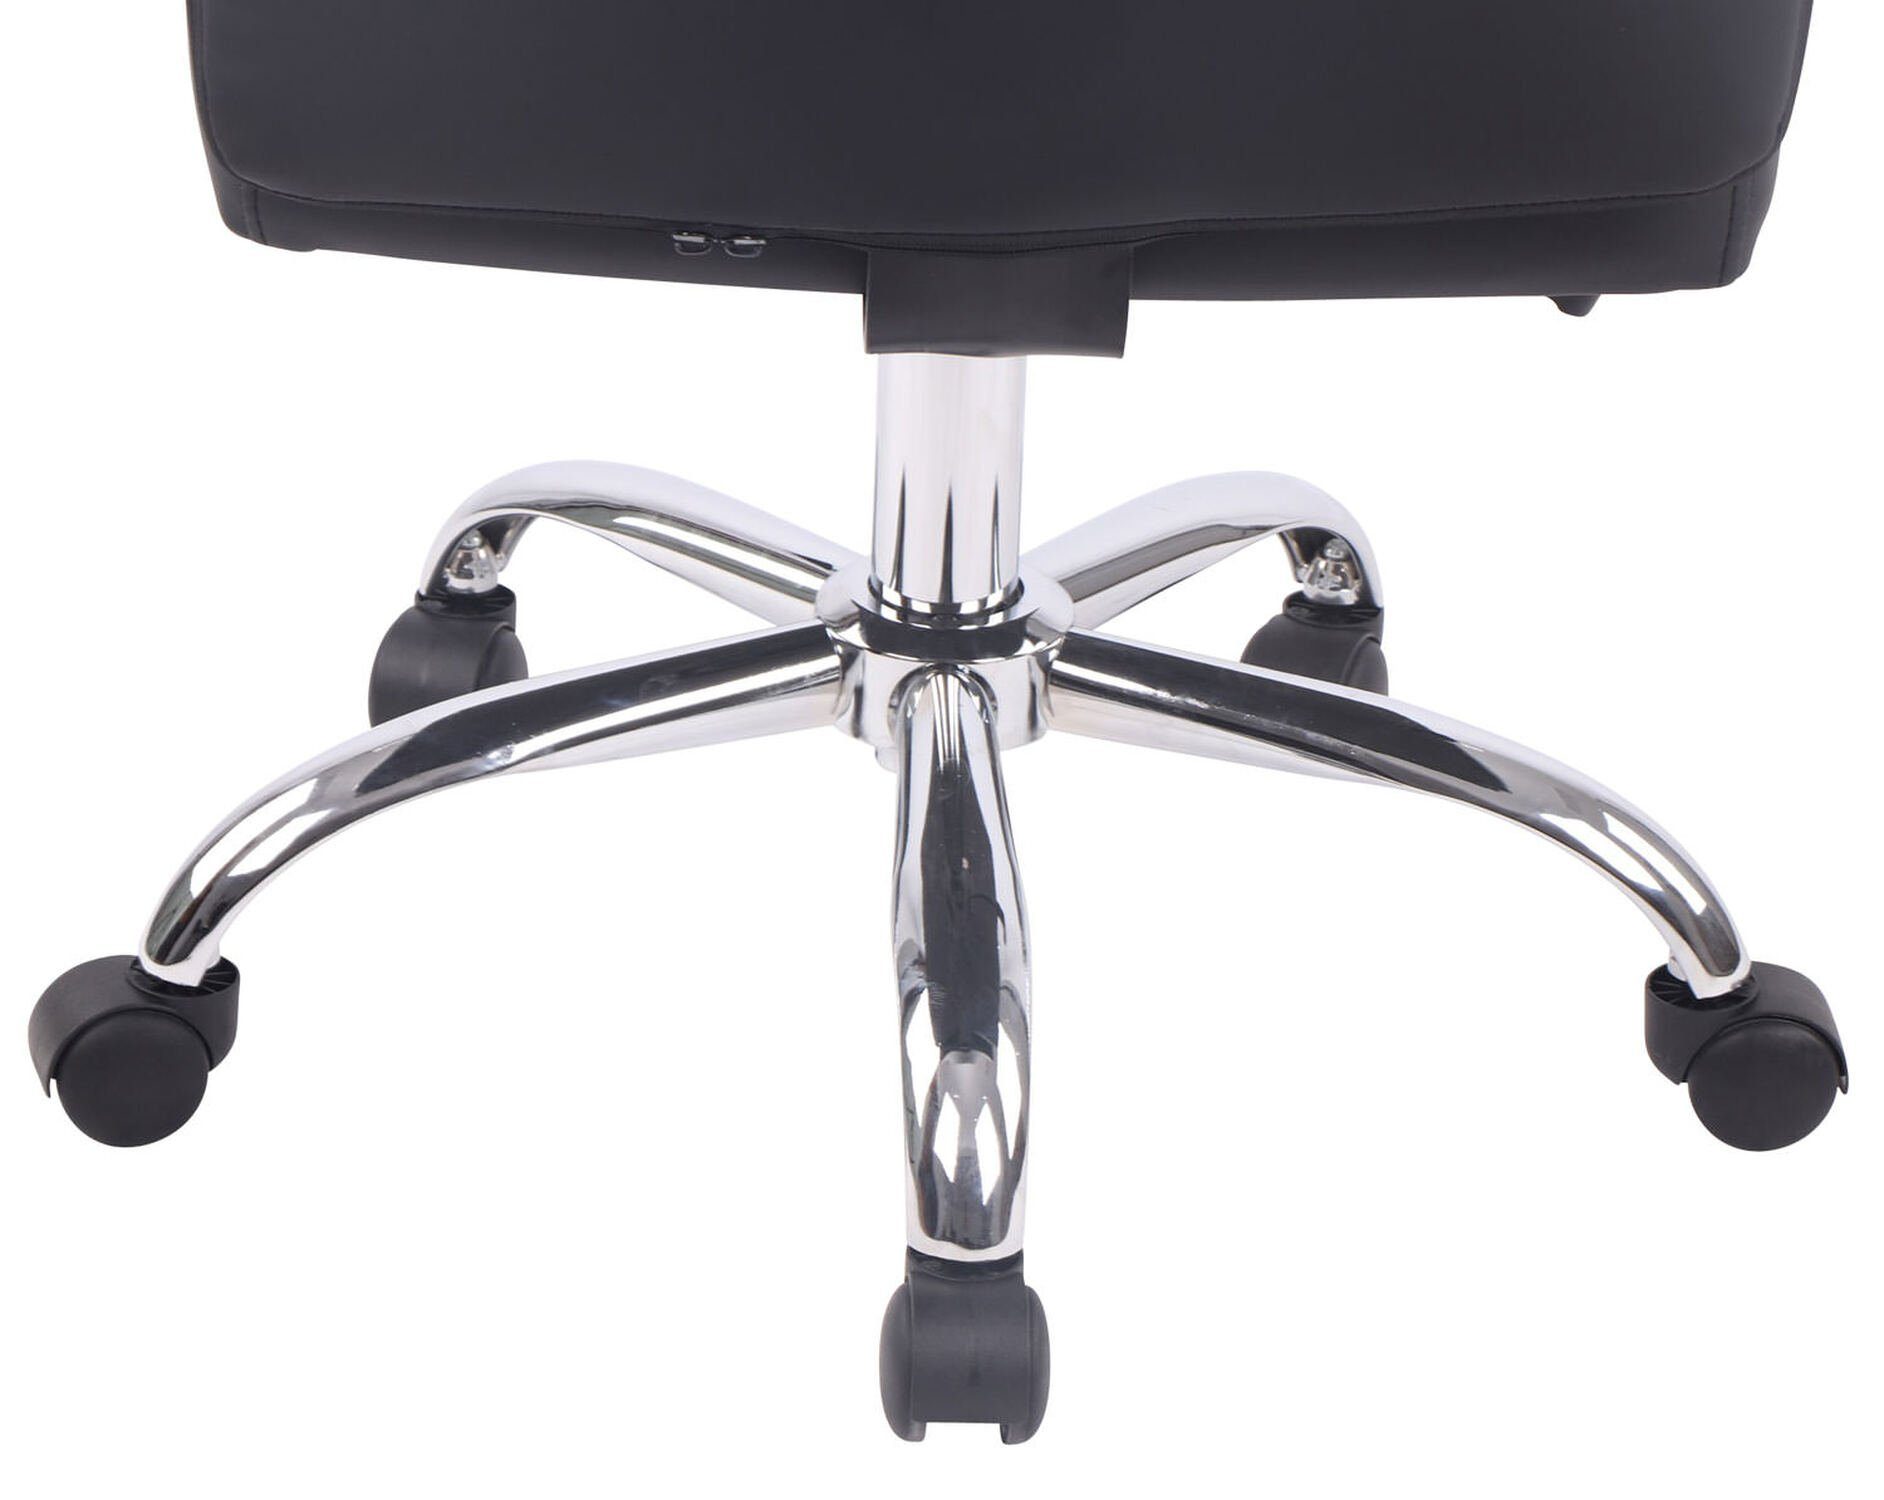 (Schreibtischstuhl, XXL), schwarz drehbar Drehstuhl, Bürostuhl mit bequemer TPFLiving höhenverstellbar chrom Bürostuhl Sitzfläche: Kunstleder und Rückenlehne Chefsessel, 360° - - V1 Deal Metall Gestell: